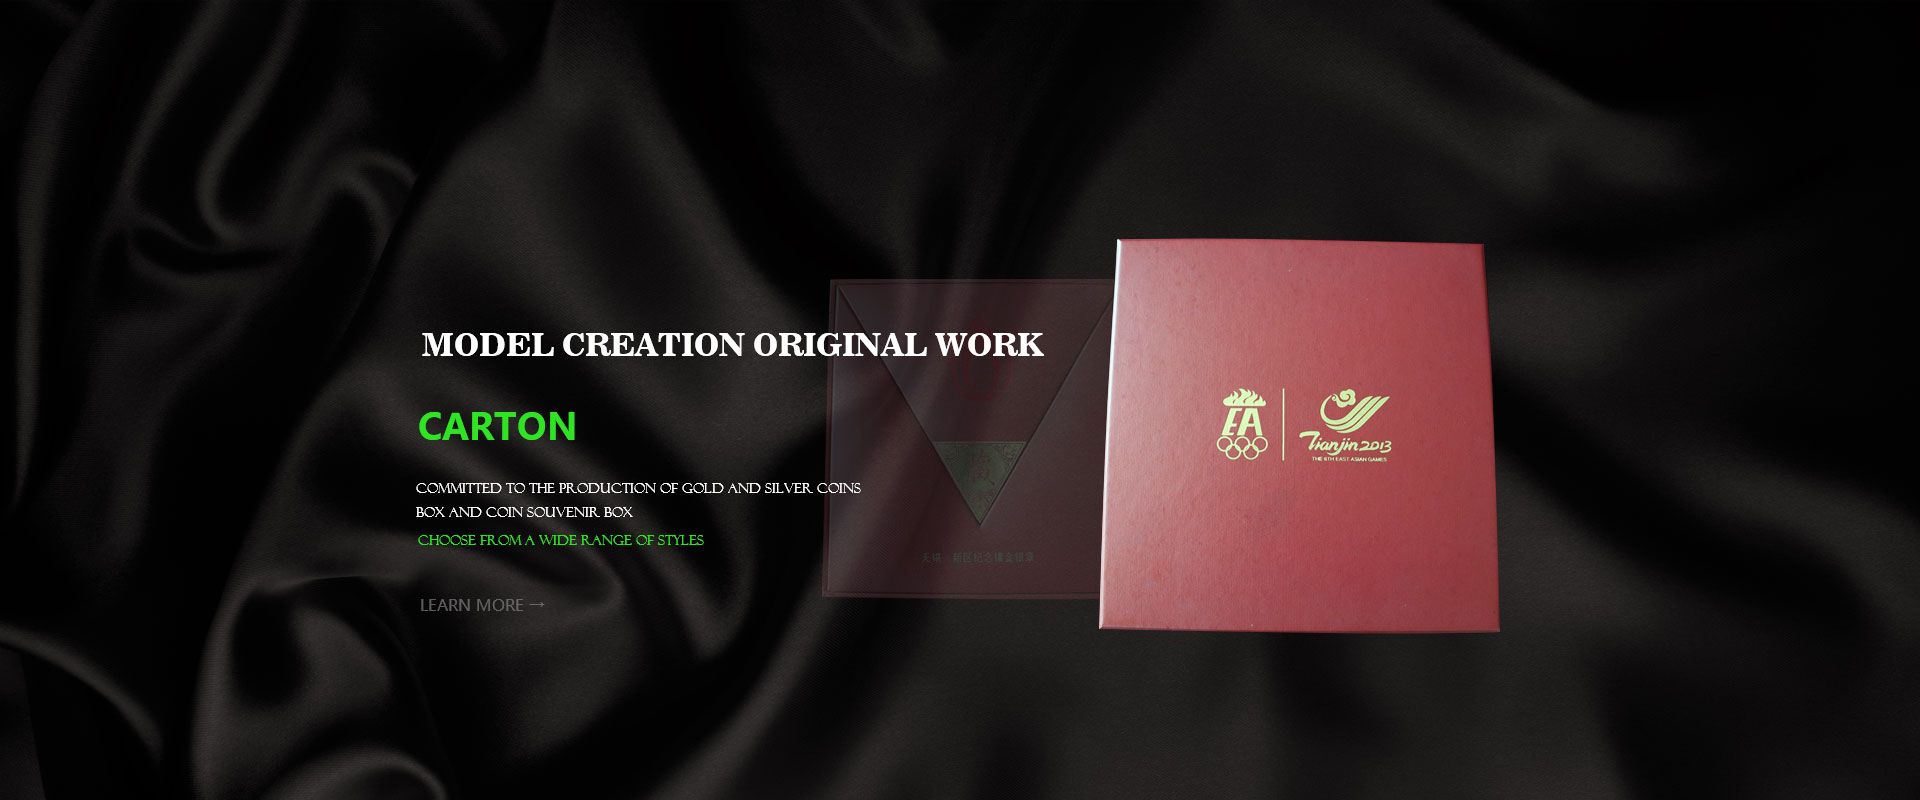 Changshu Education Arts & Crafts Co., Ltd.